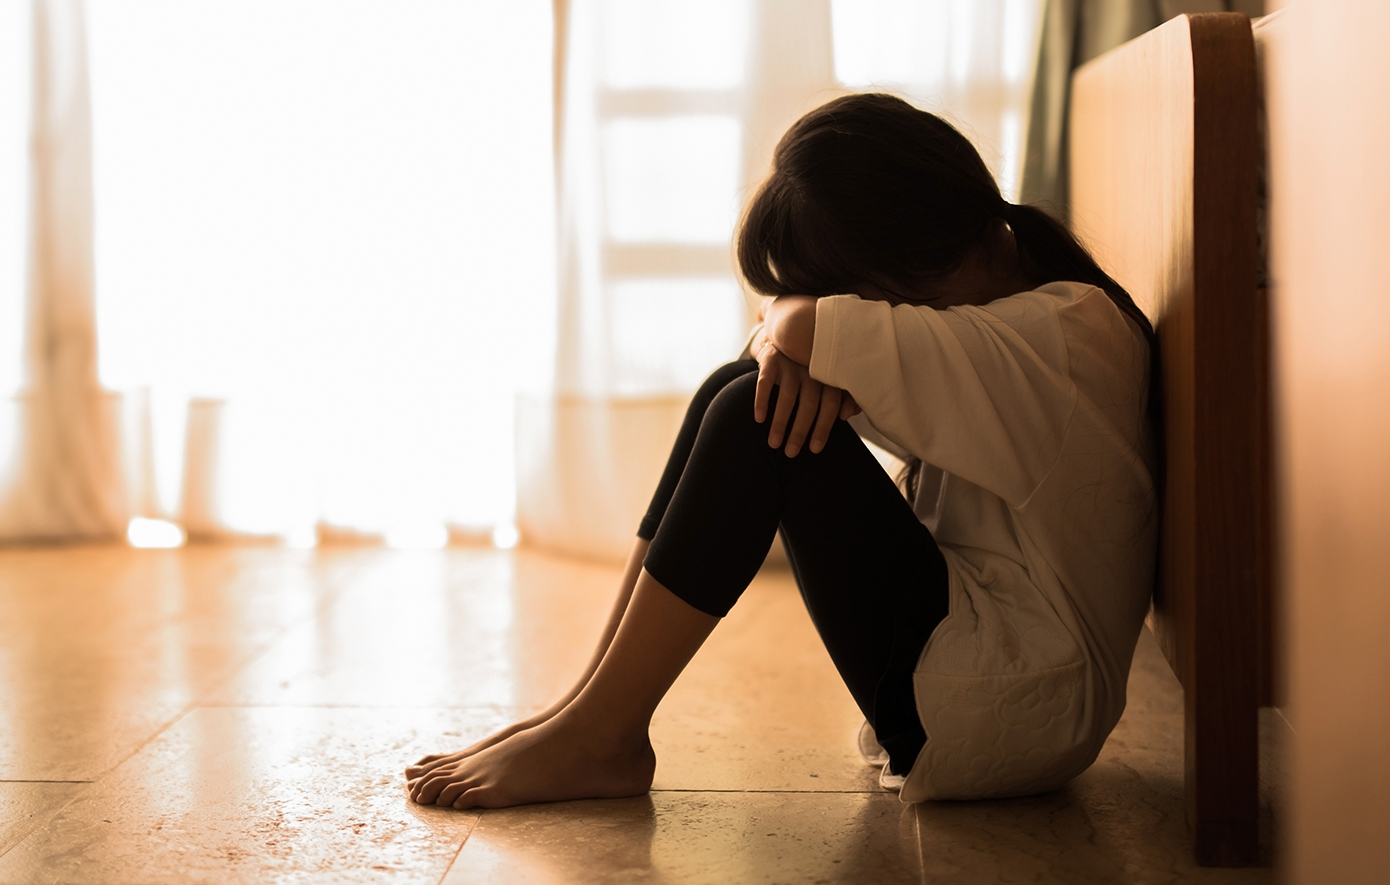 Ηλεία: 19χρονη κατήγγειλε τον σύντροφό της ότι τη βίασε και την κρατούσε κλειδωμένη στο σπίτι τους